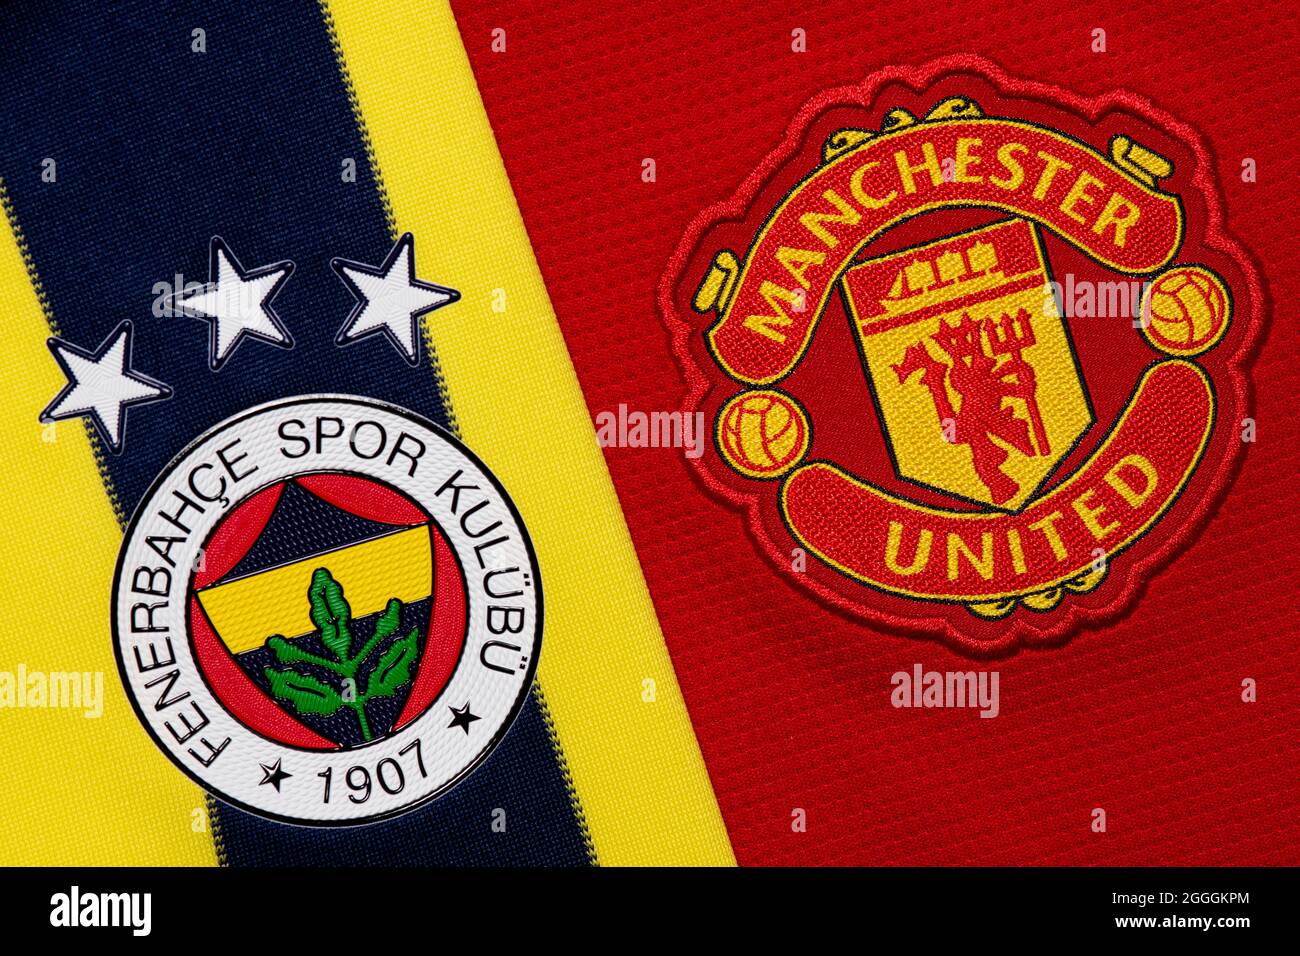 Nahaufnahme des Vereinswappens von Manchester United & Fenerbahce. Stockfoto